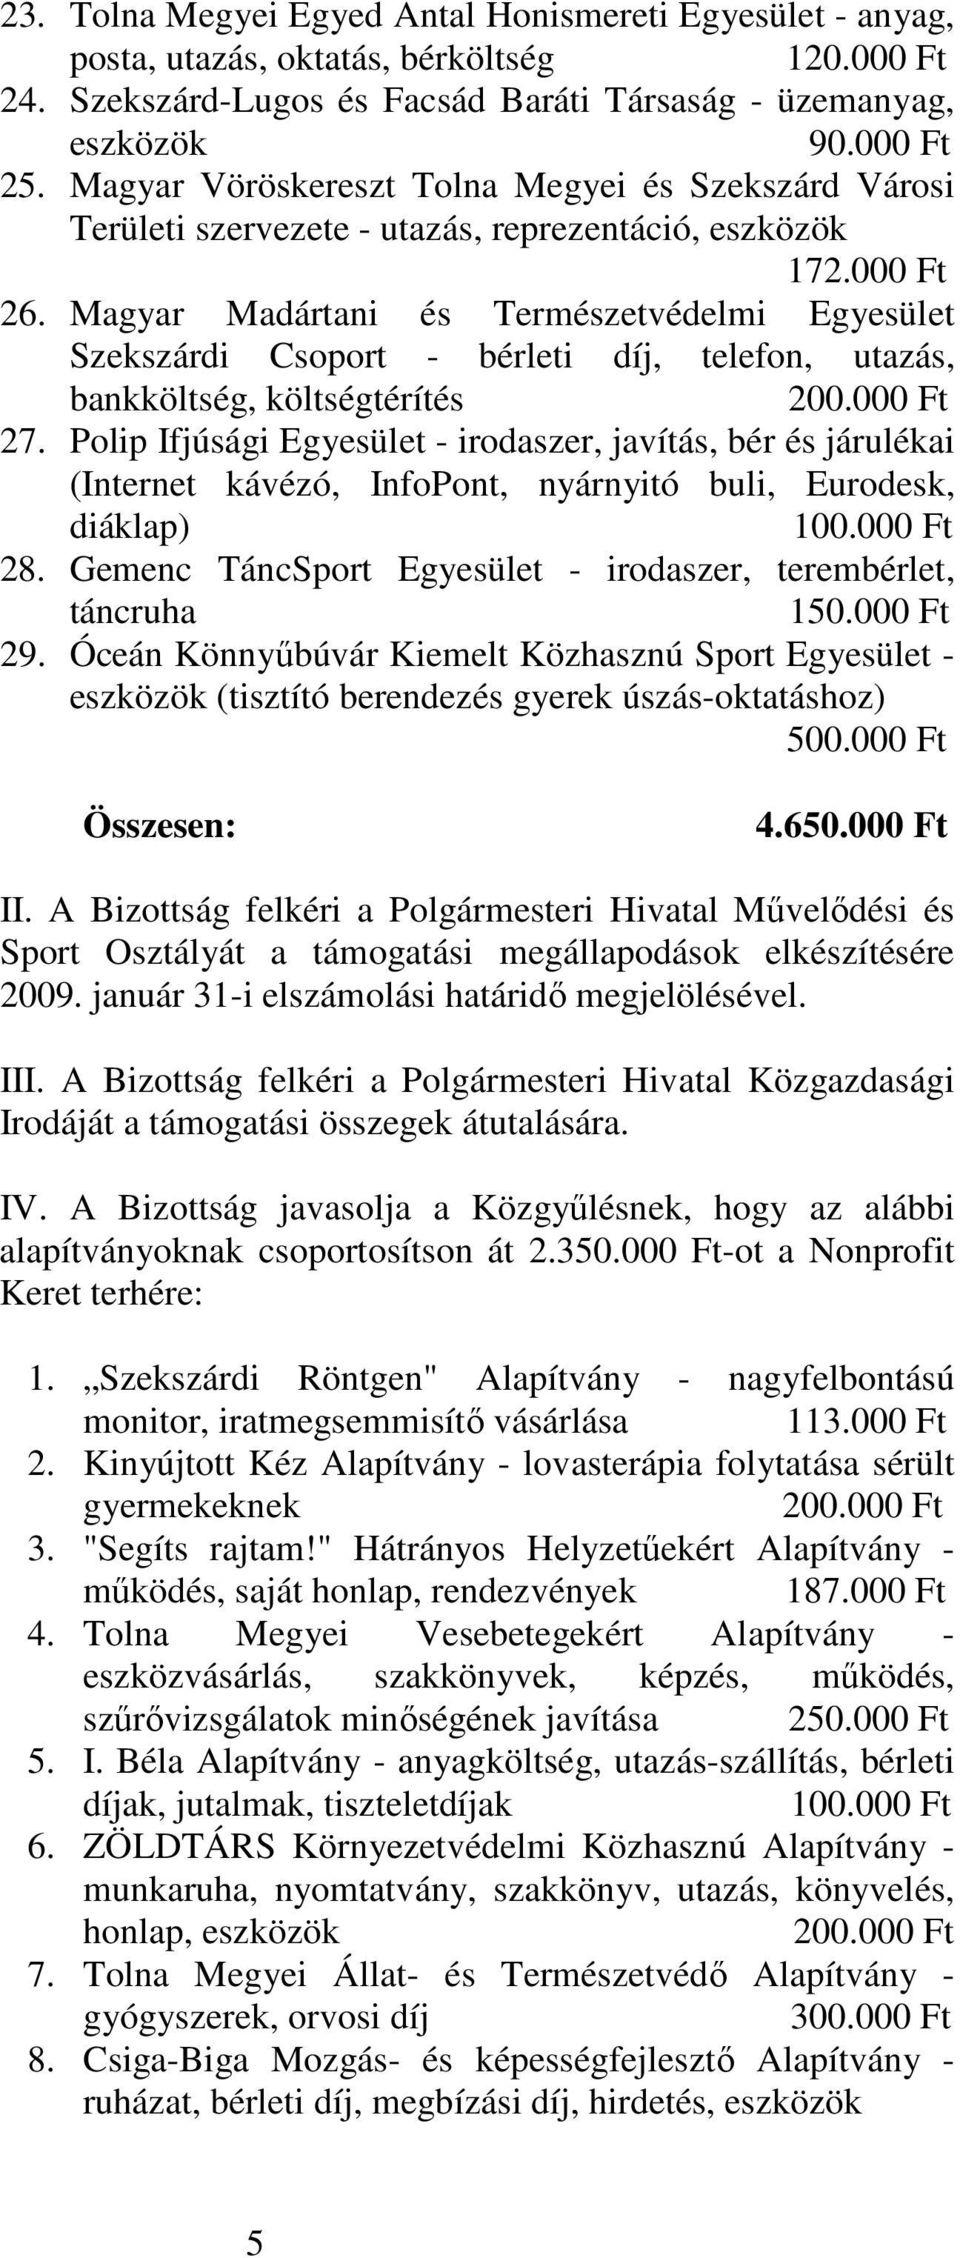 Magyar Madártani és Természetvédelmi Egyesület Szekszárdi Csoport - bérleti díj, telefon, utazás, bankköltség, költségtérítés 200.000 Ft 27.